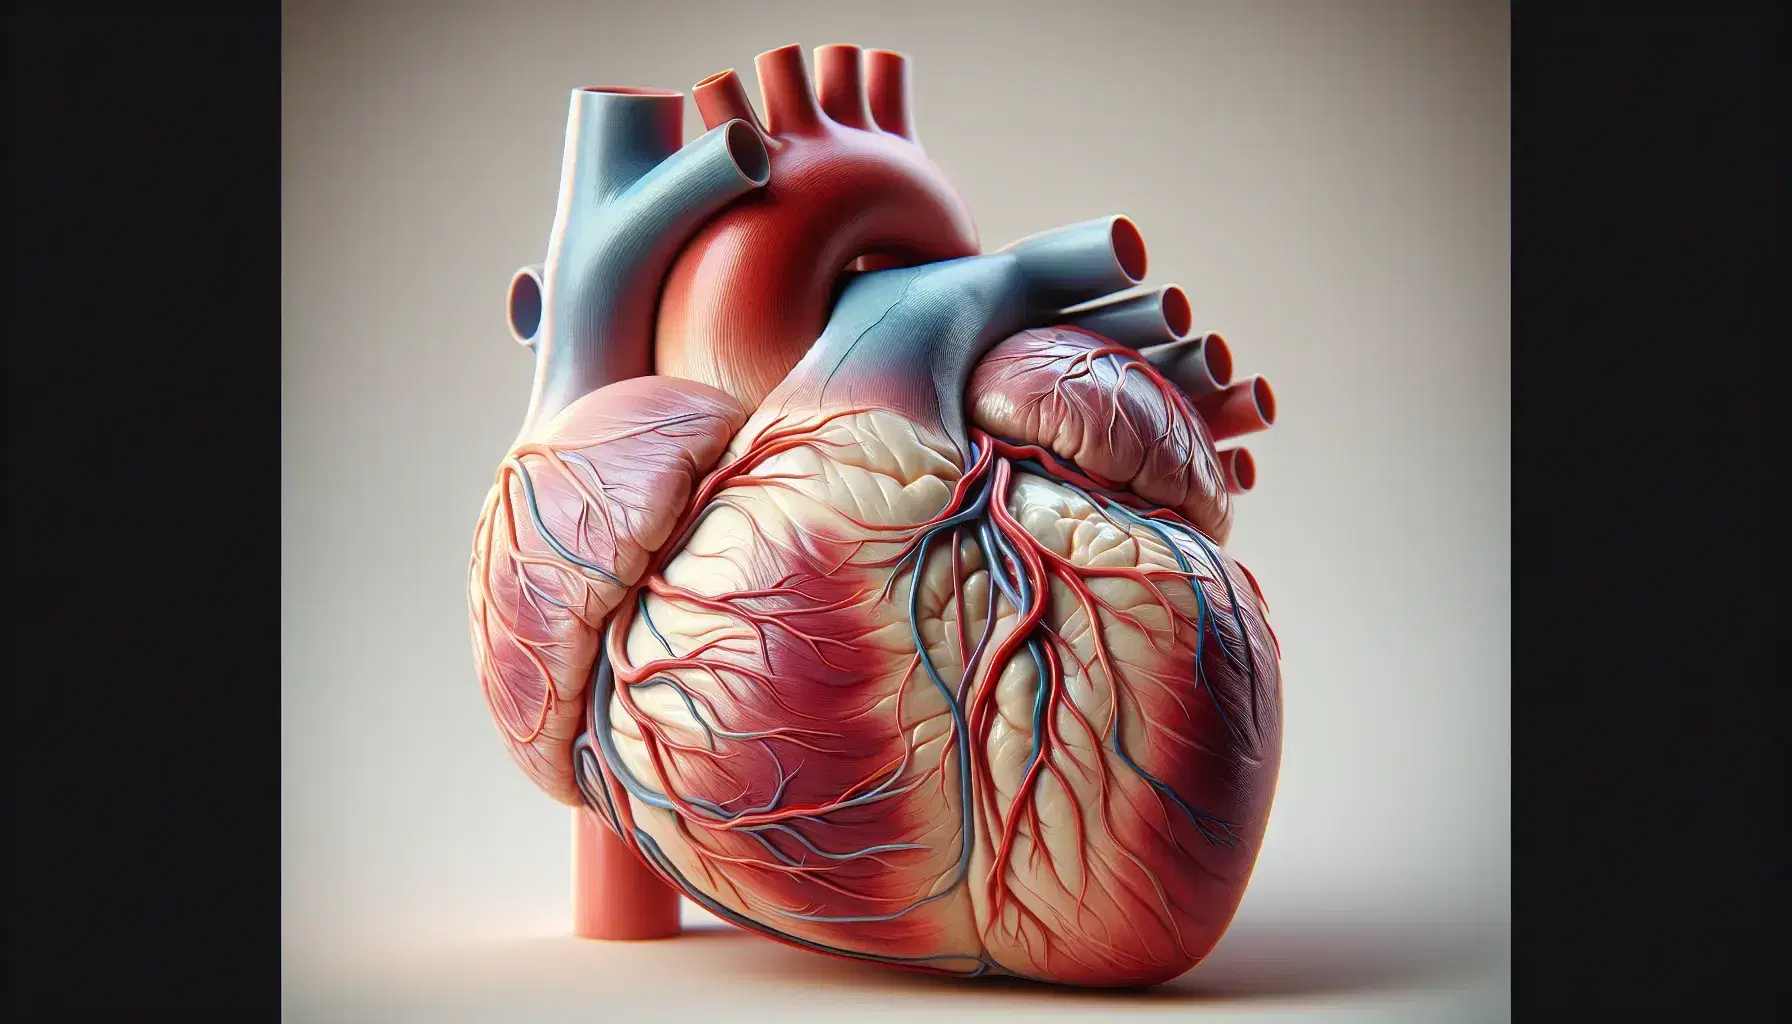 Modelo anatómico detallado del corazón humano mostrando cámaras internas, válvulas y arterias coronarias sobre fondo neutro.